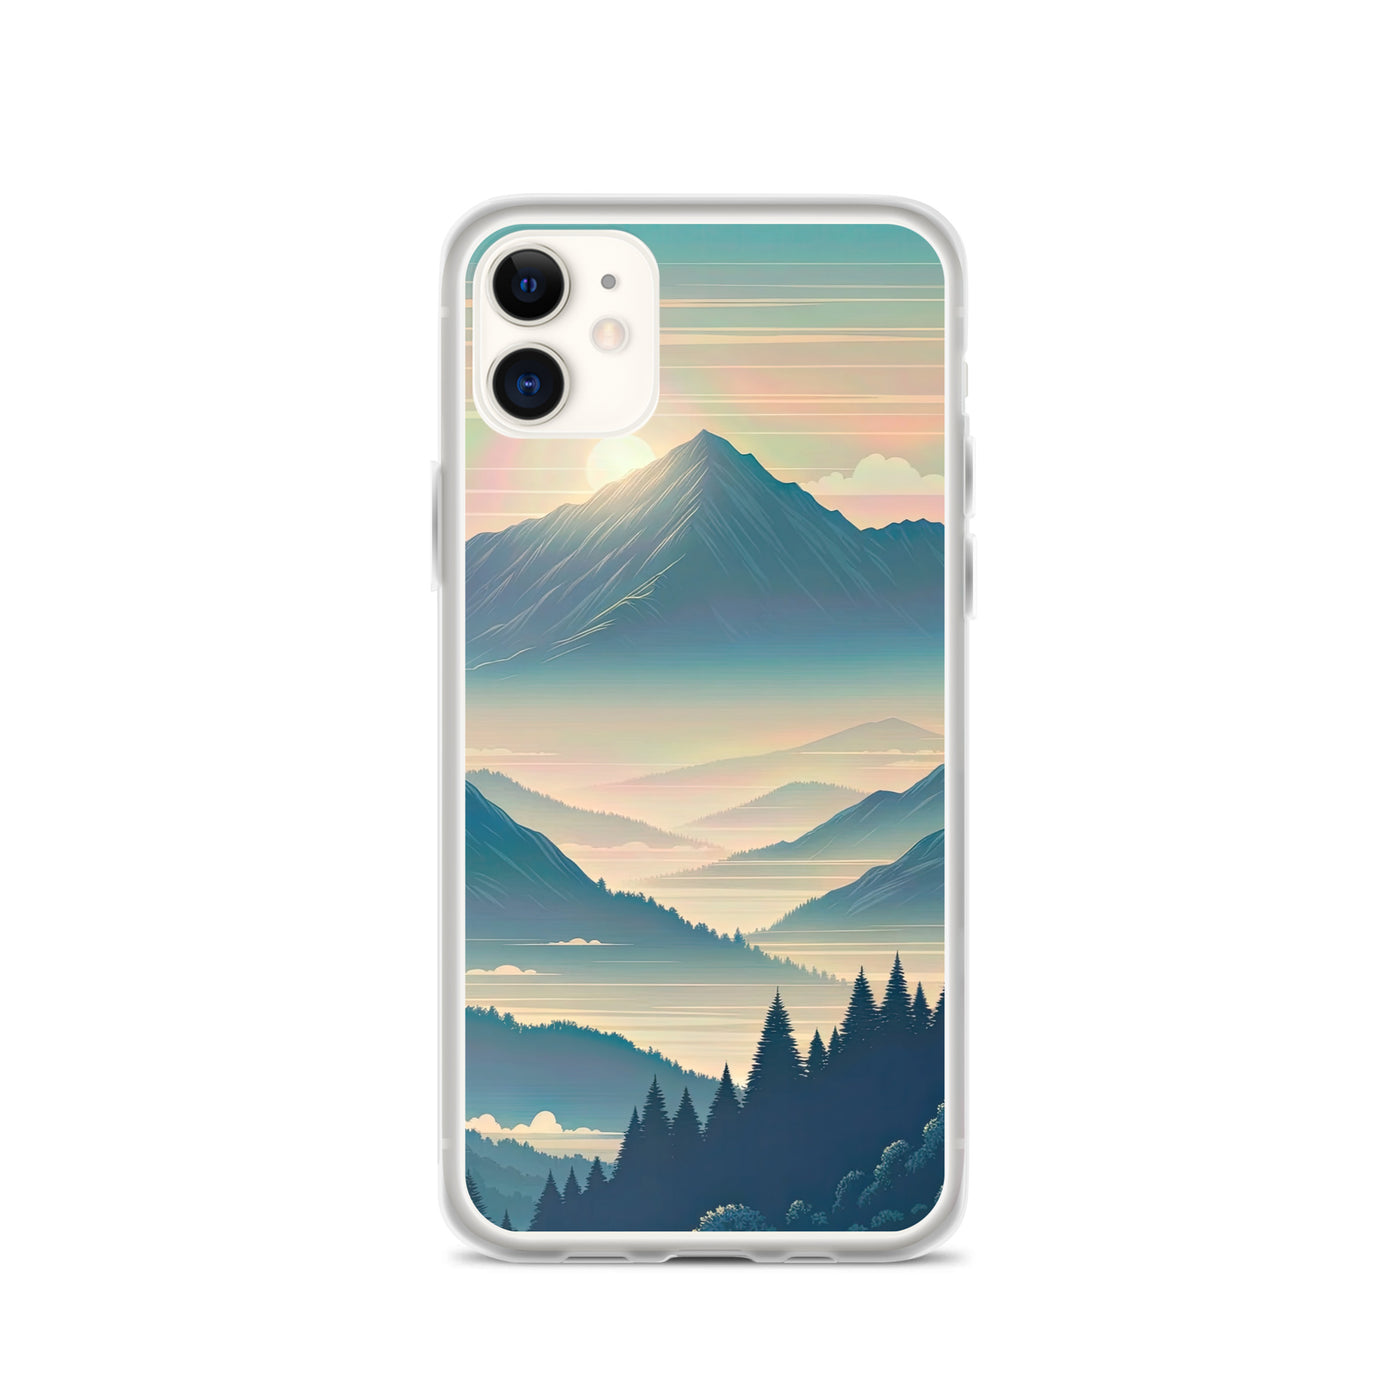 Bergszene bei Morgendämmerung, erste Sonnenstrahlen auf Bergrücken - iPhone Schutzhülle (durchsichtig) berge xxx yyy zzz iPhone 11